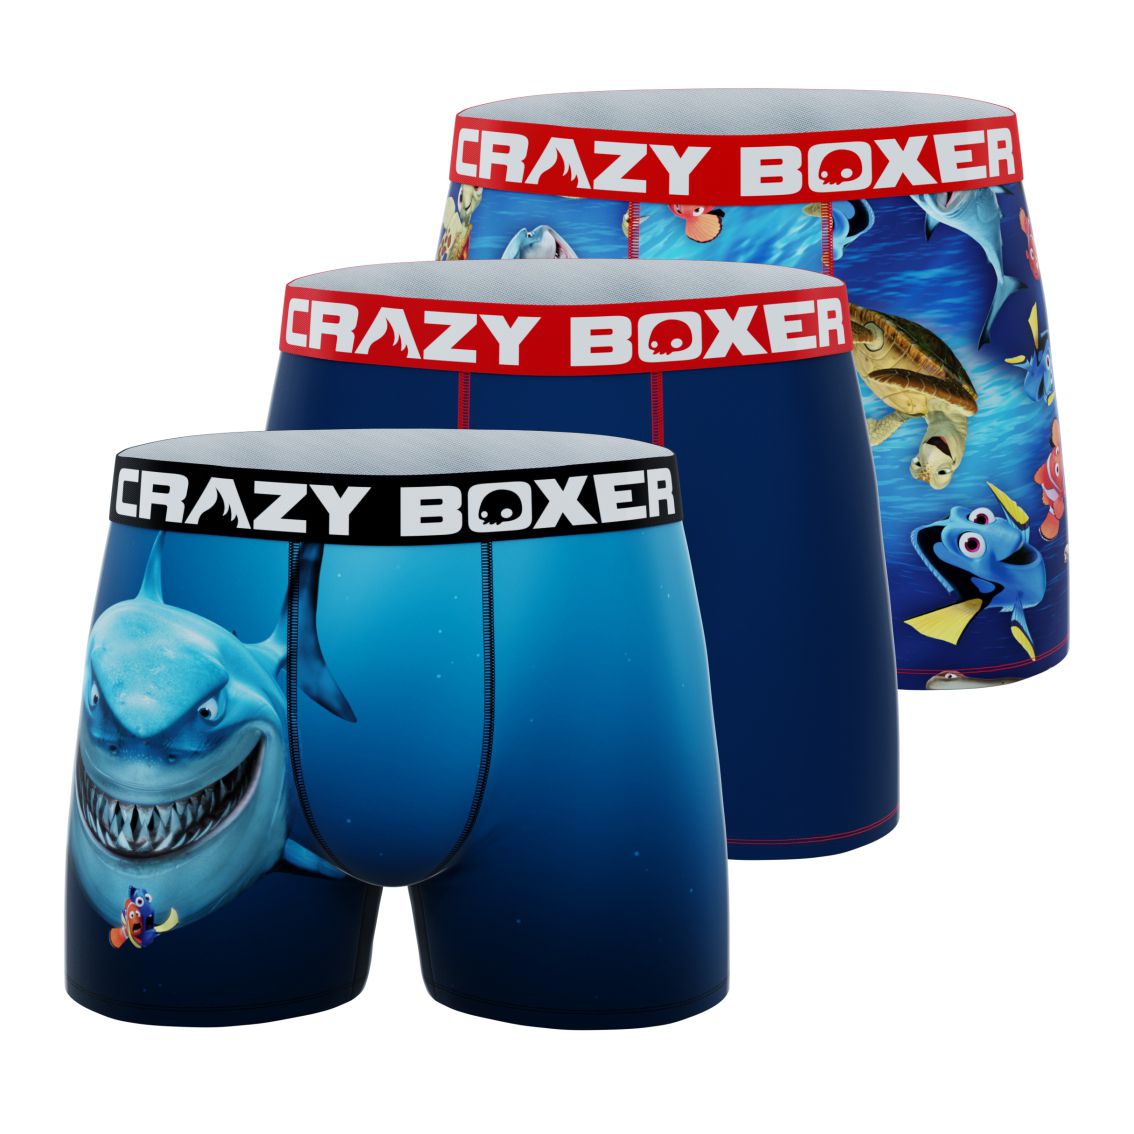 CRAZYBOXER Pixar Finding Nemo Men's Boxer Briefs (3 Pack)